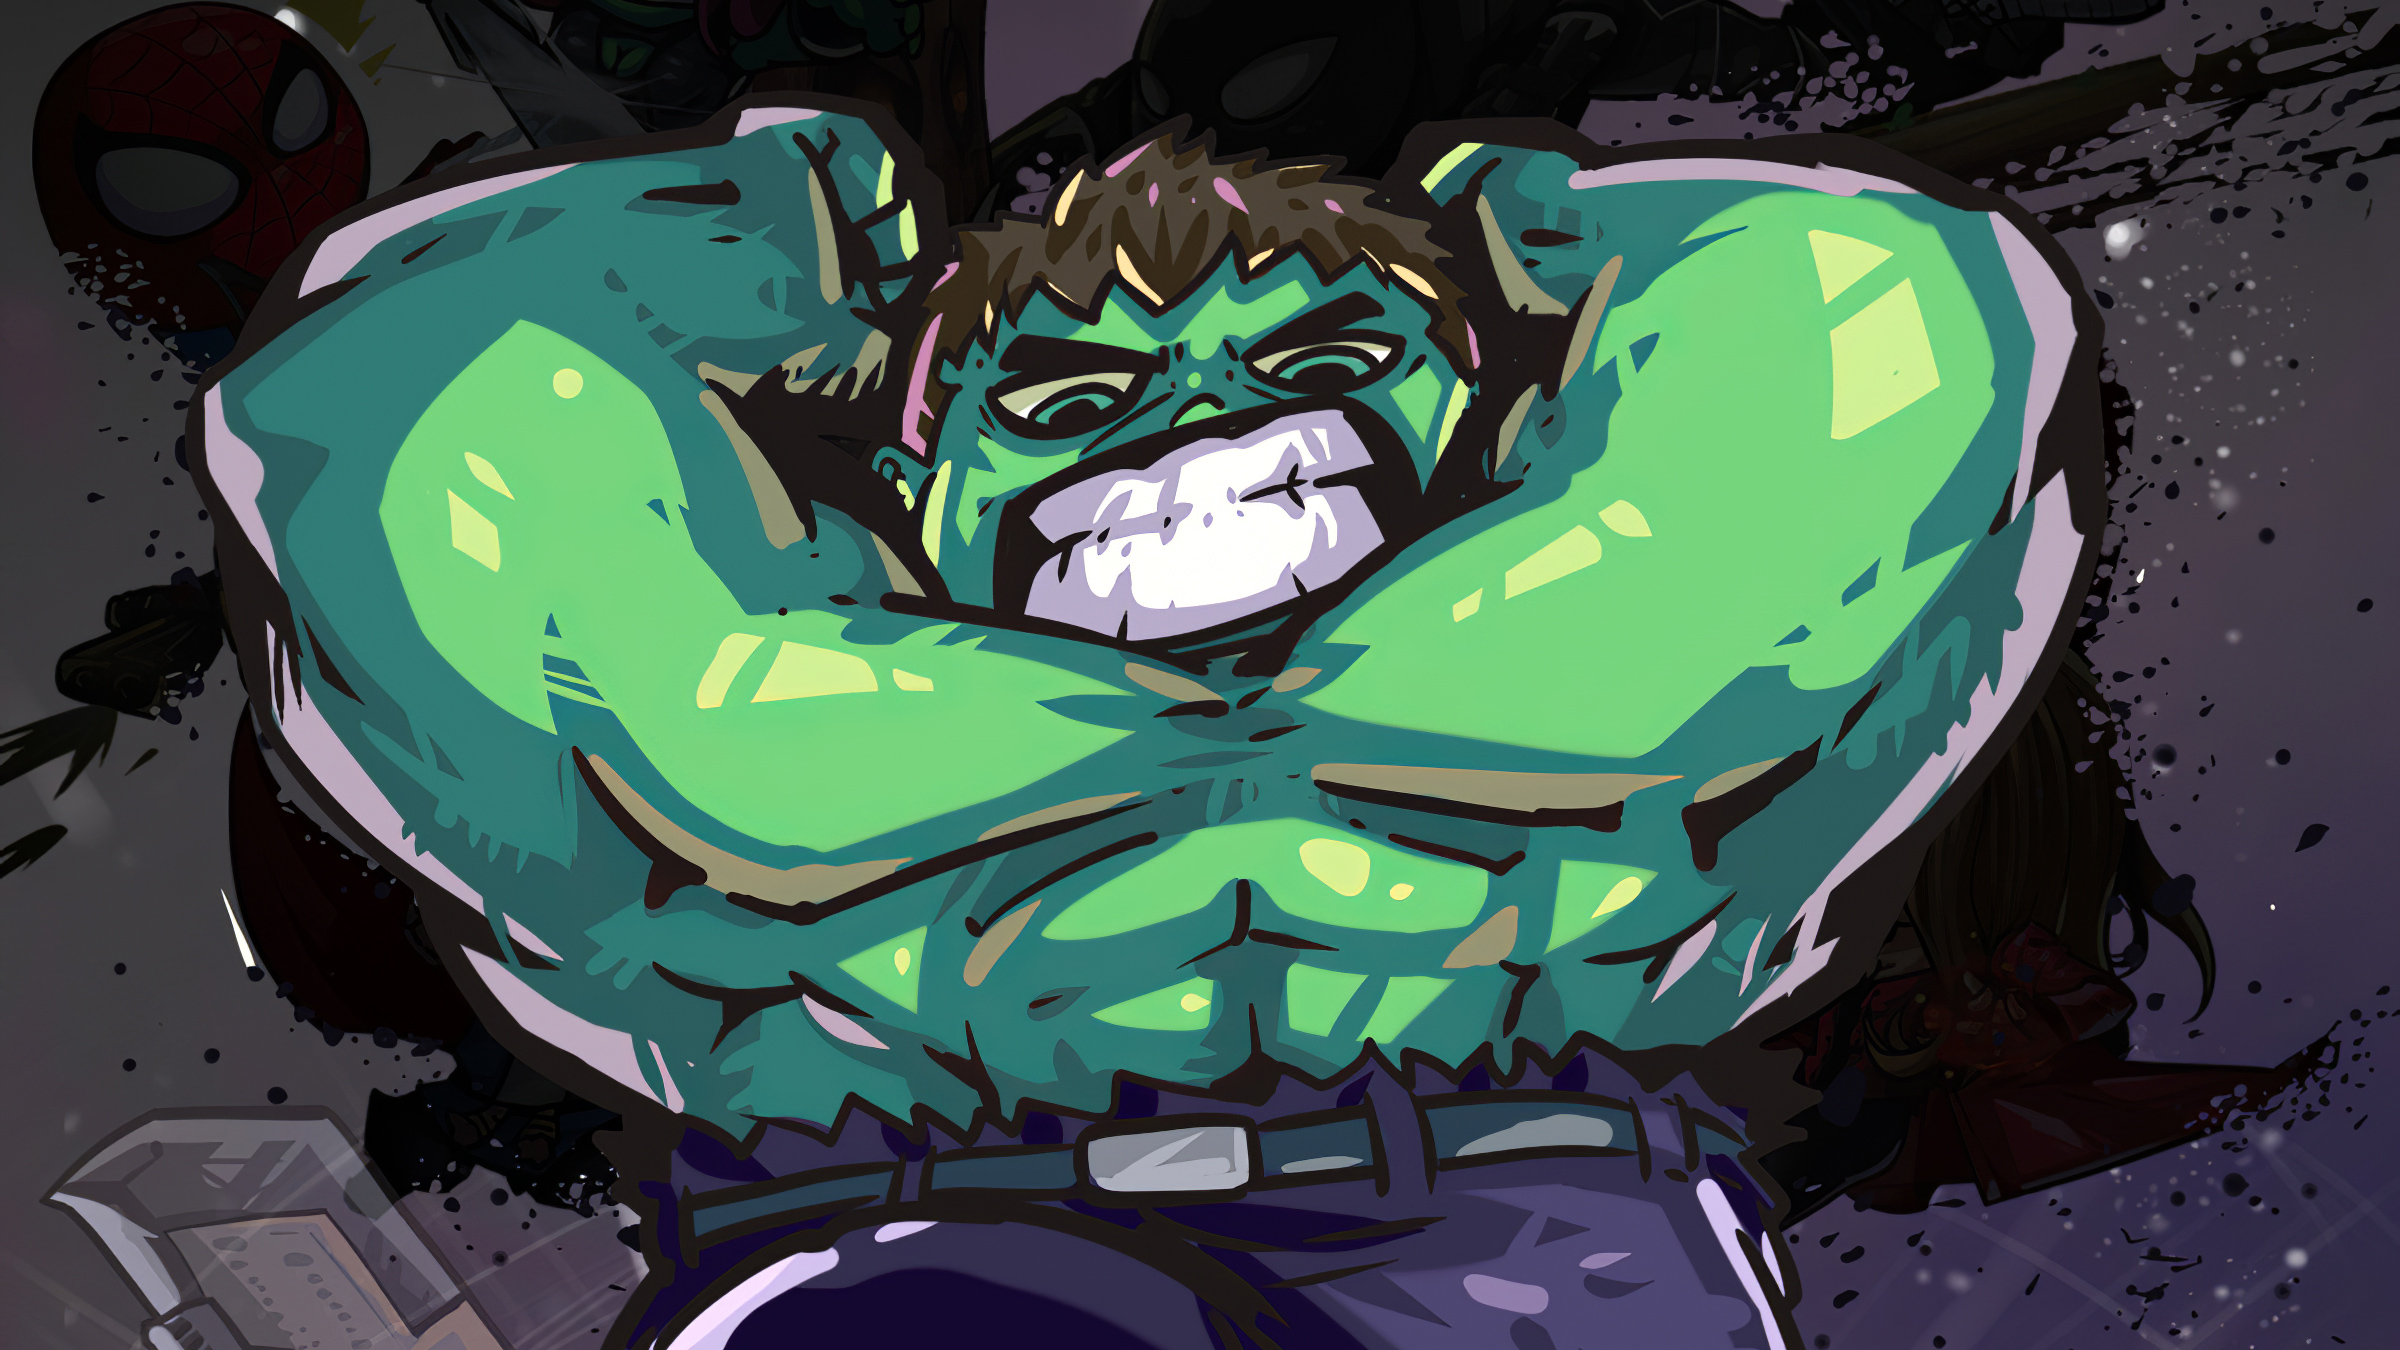 Free download wallpaper Hulk, Movie, The Avengers, Avengers Endgame on your PC desktop